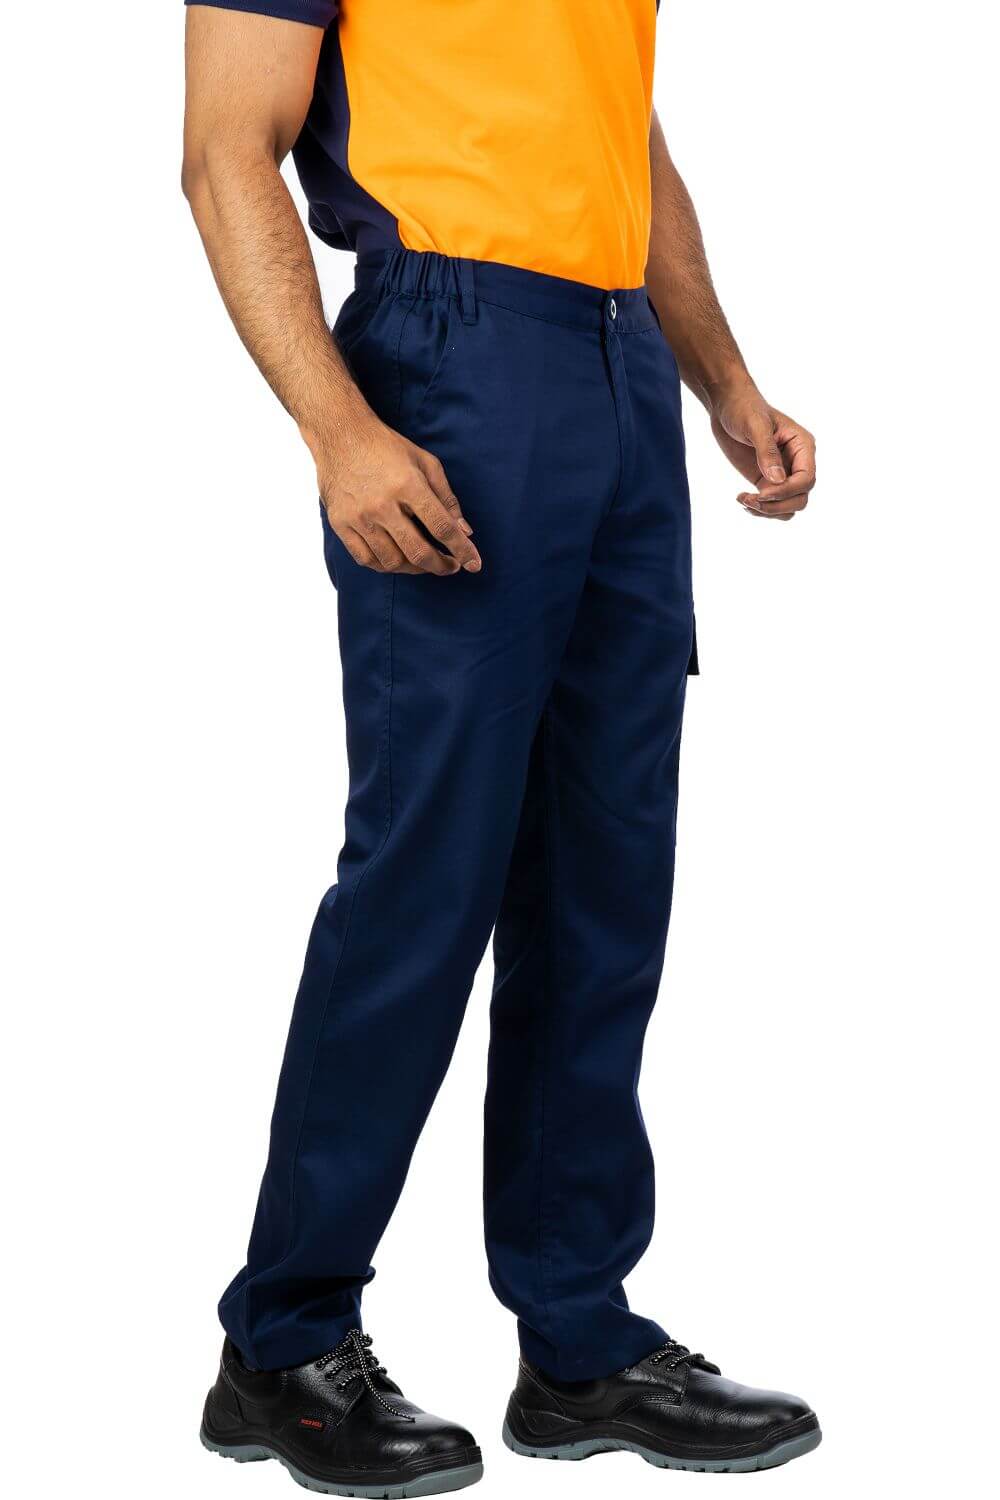 Navy Blue Cotton Blend Work Trouser